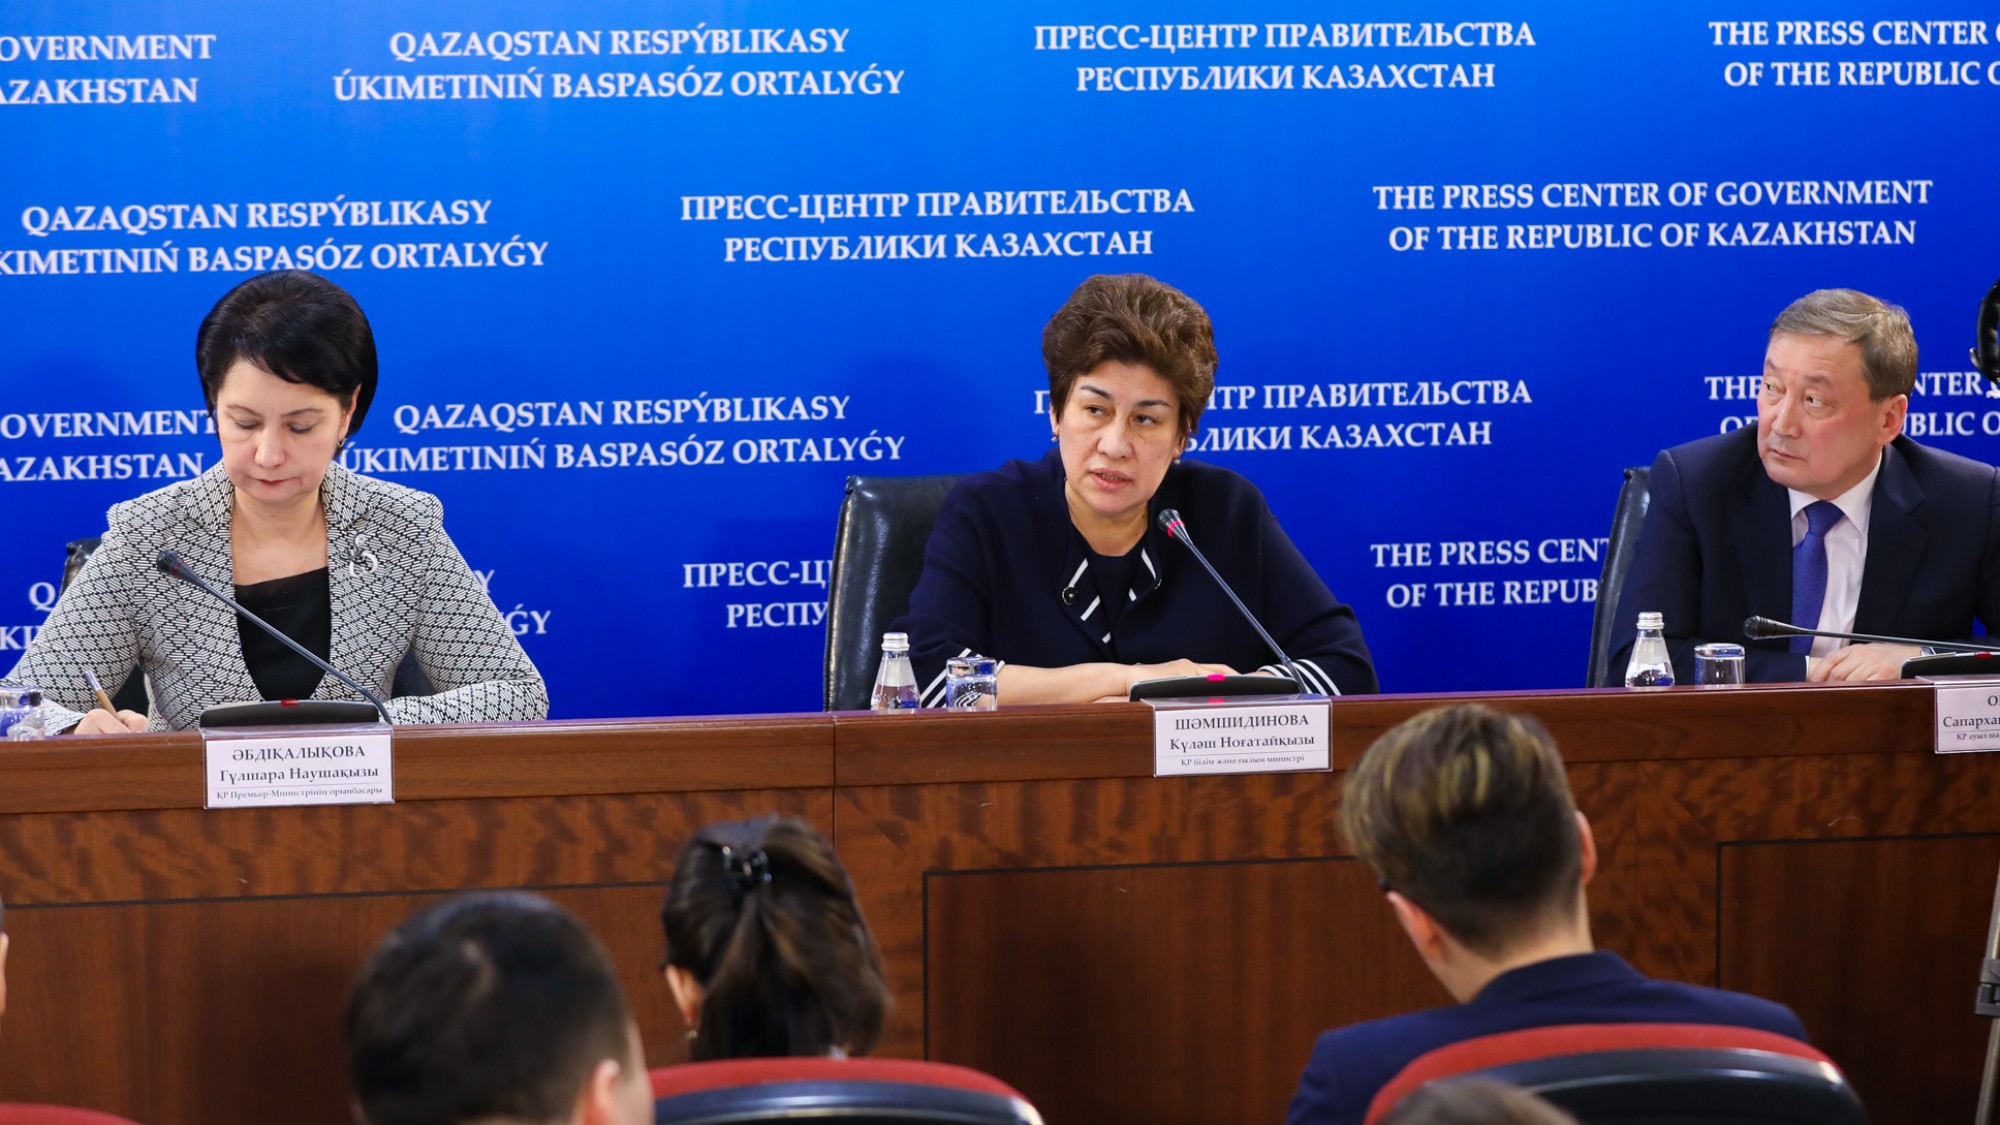 К. Шамшидинова: Основная задача на сегодня – это повышение профессионализма педагогических кадров